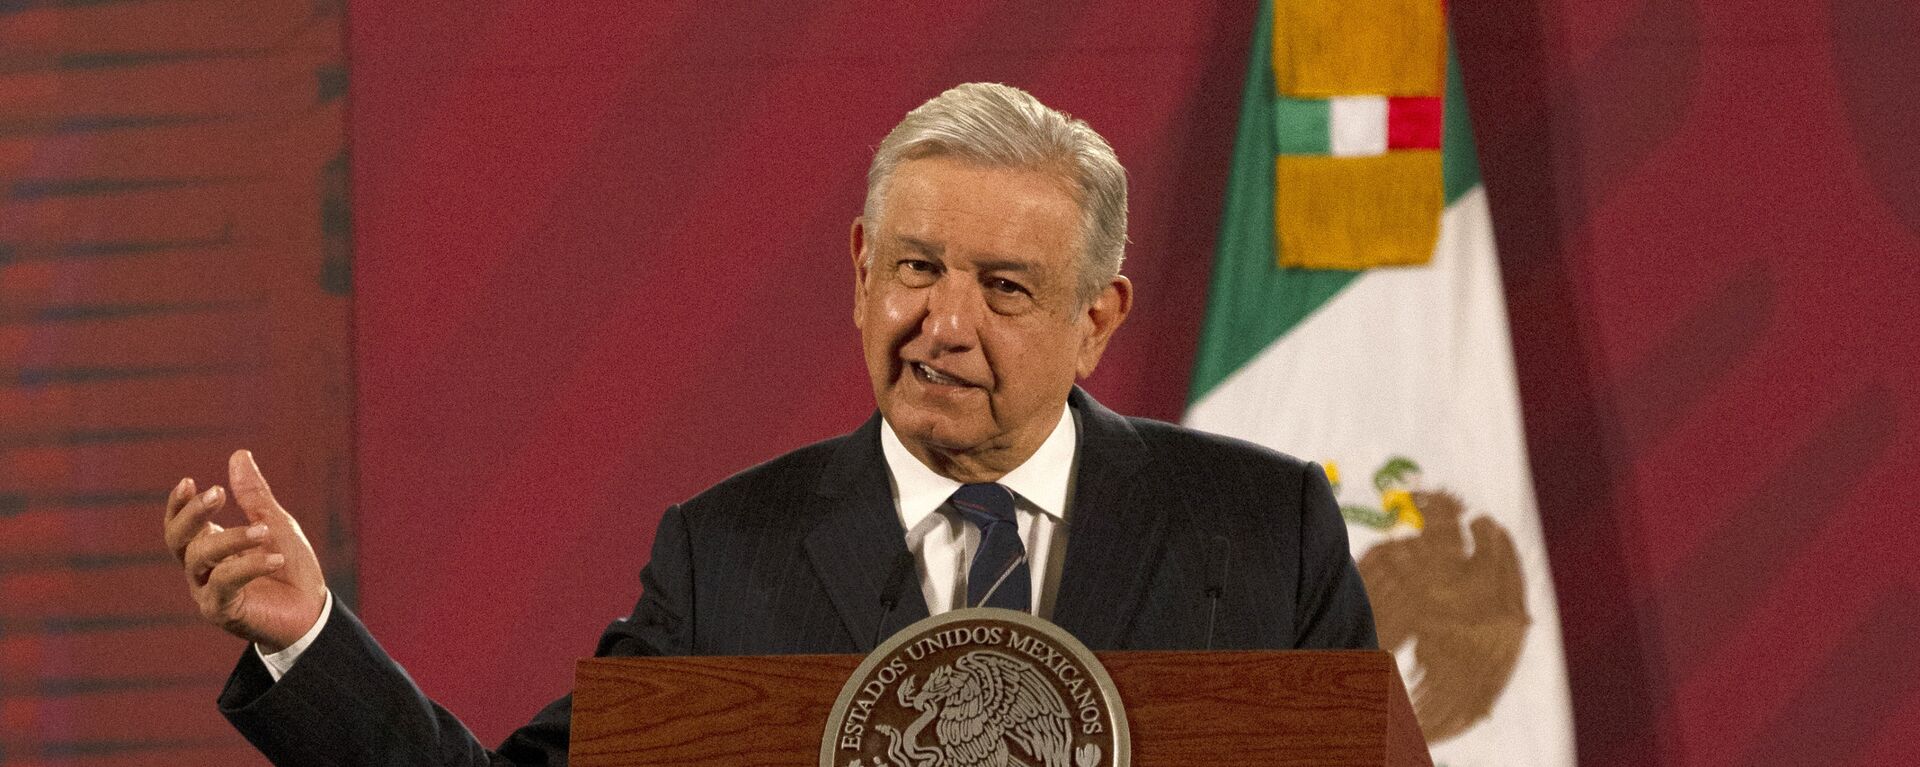 Andrés Manuel López Obrador, presidente de México - Sputnik Mundo, 1920, 19.02.2021